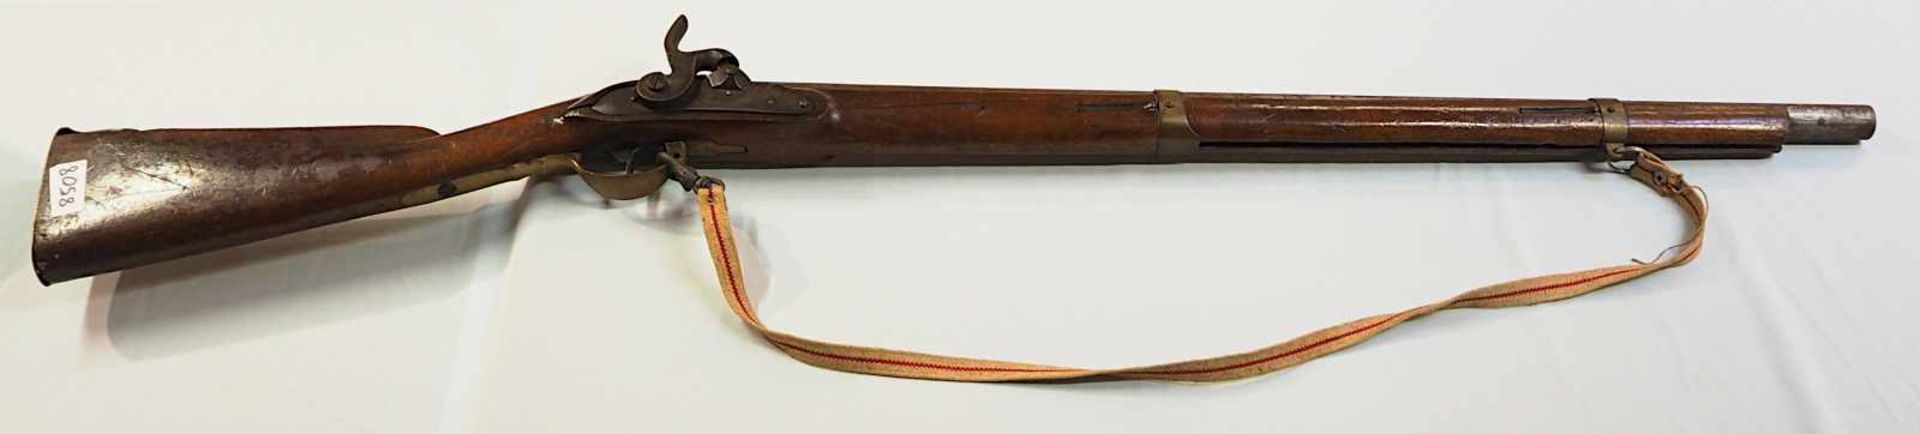 1 Hinterladergewehr wohl MAUSER Mod. 71/84auf Verschluss gemarkt "1886/1887 Amberg" u. - Bild 2 aus 2